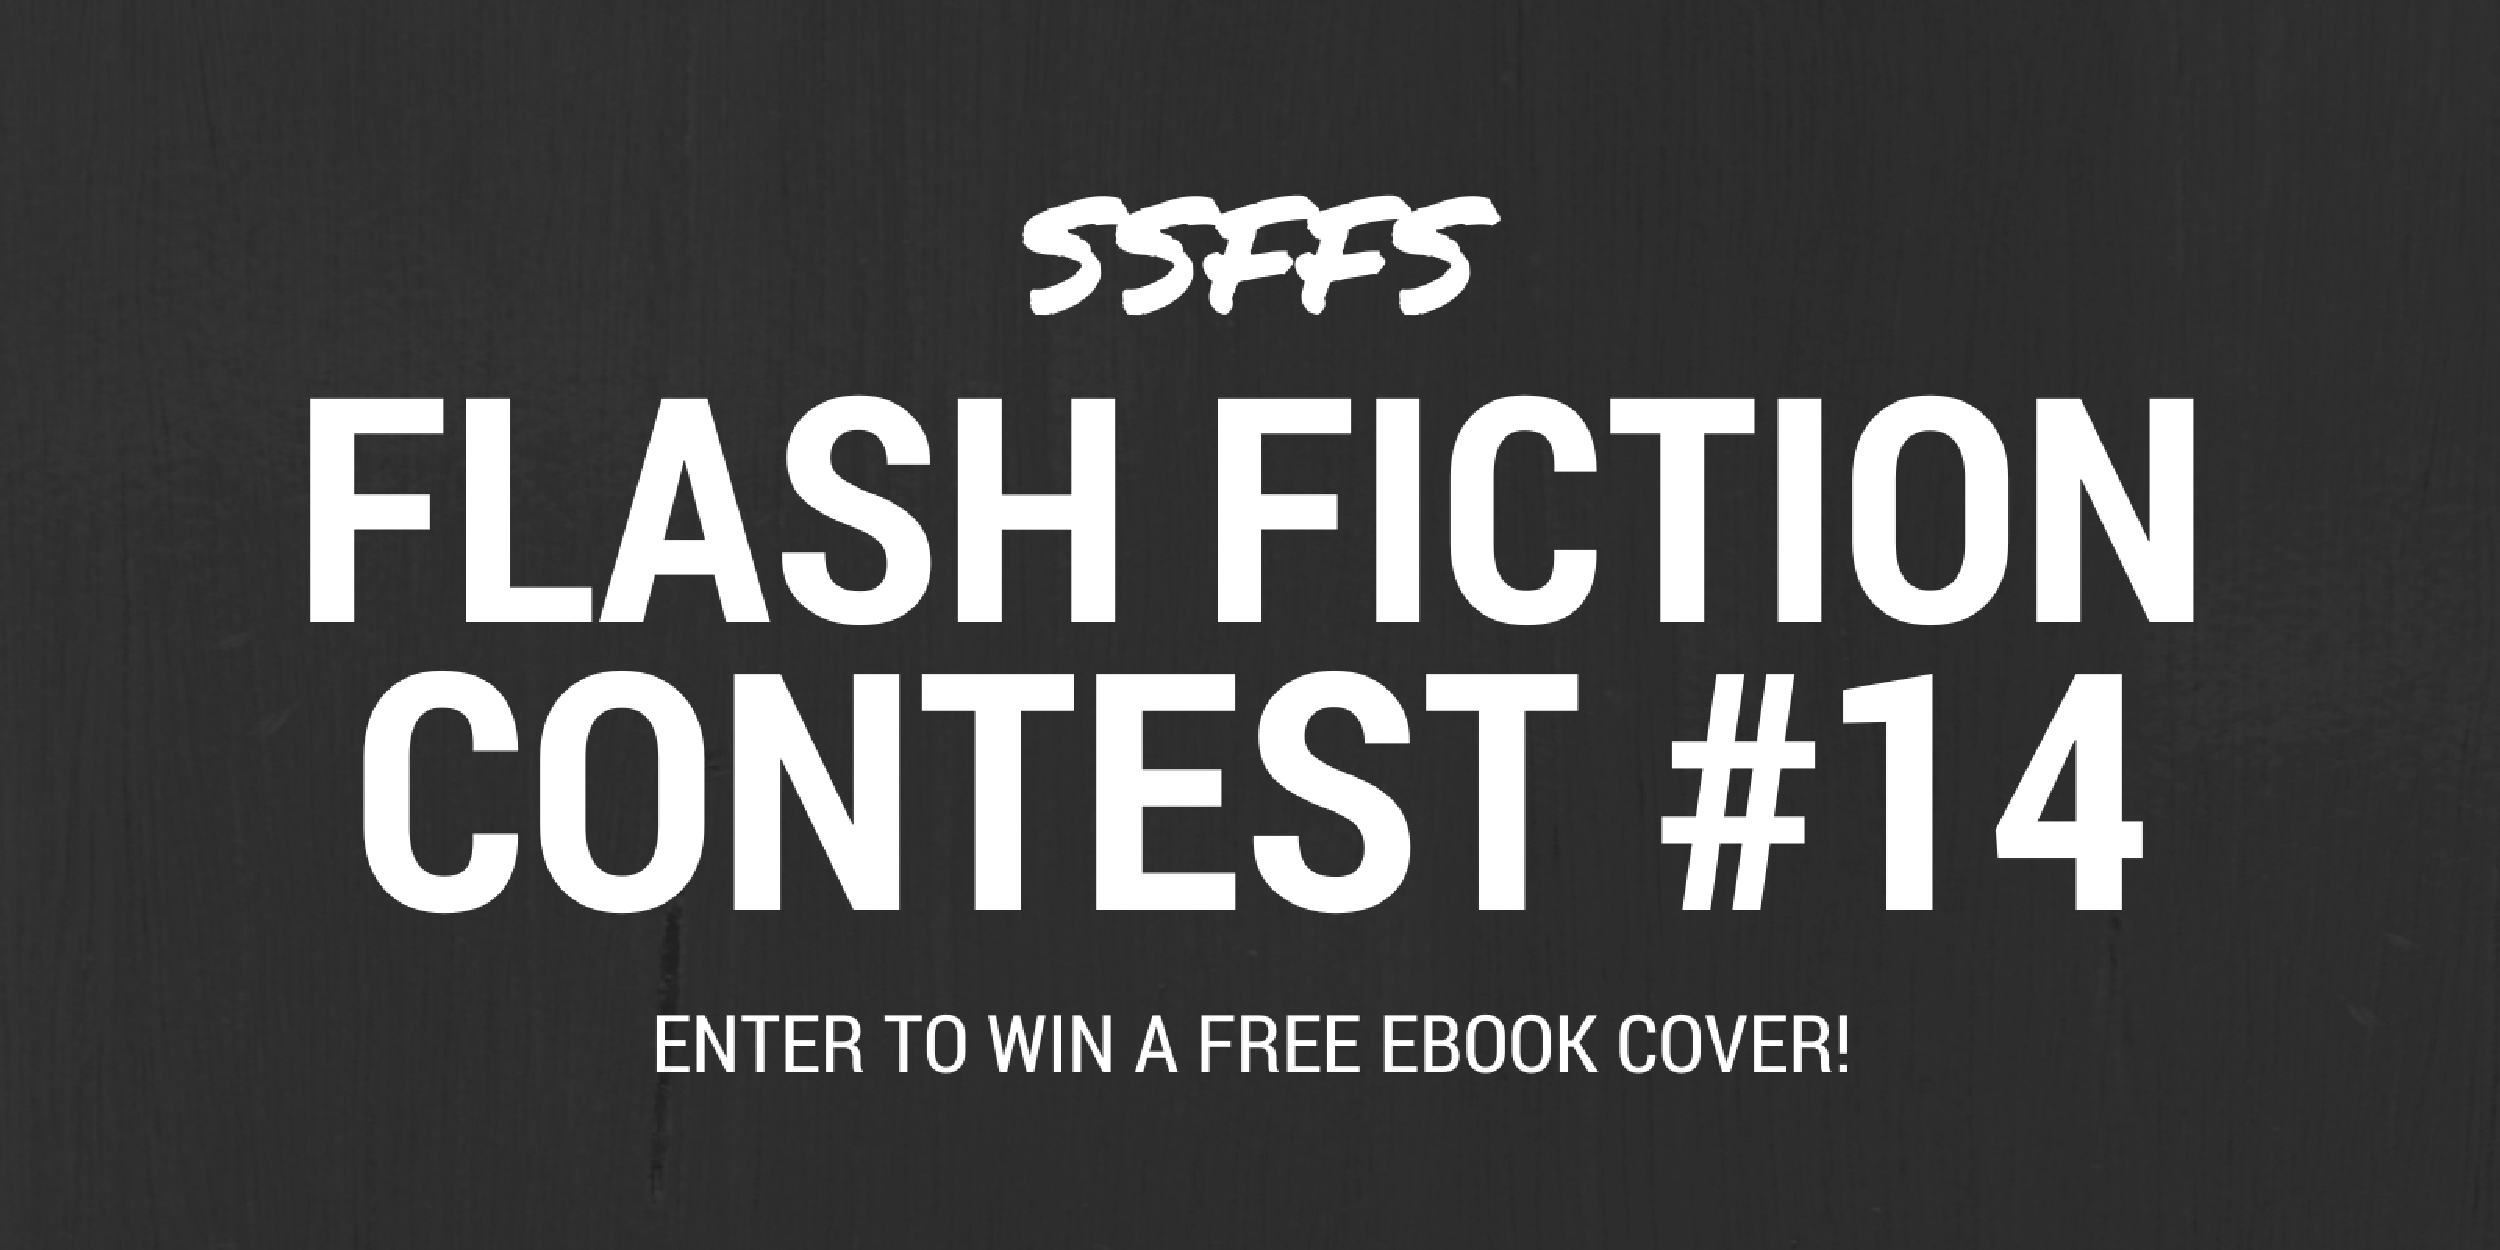 ssffs-flash-fiction-contest-14